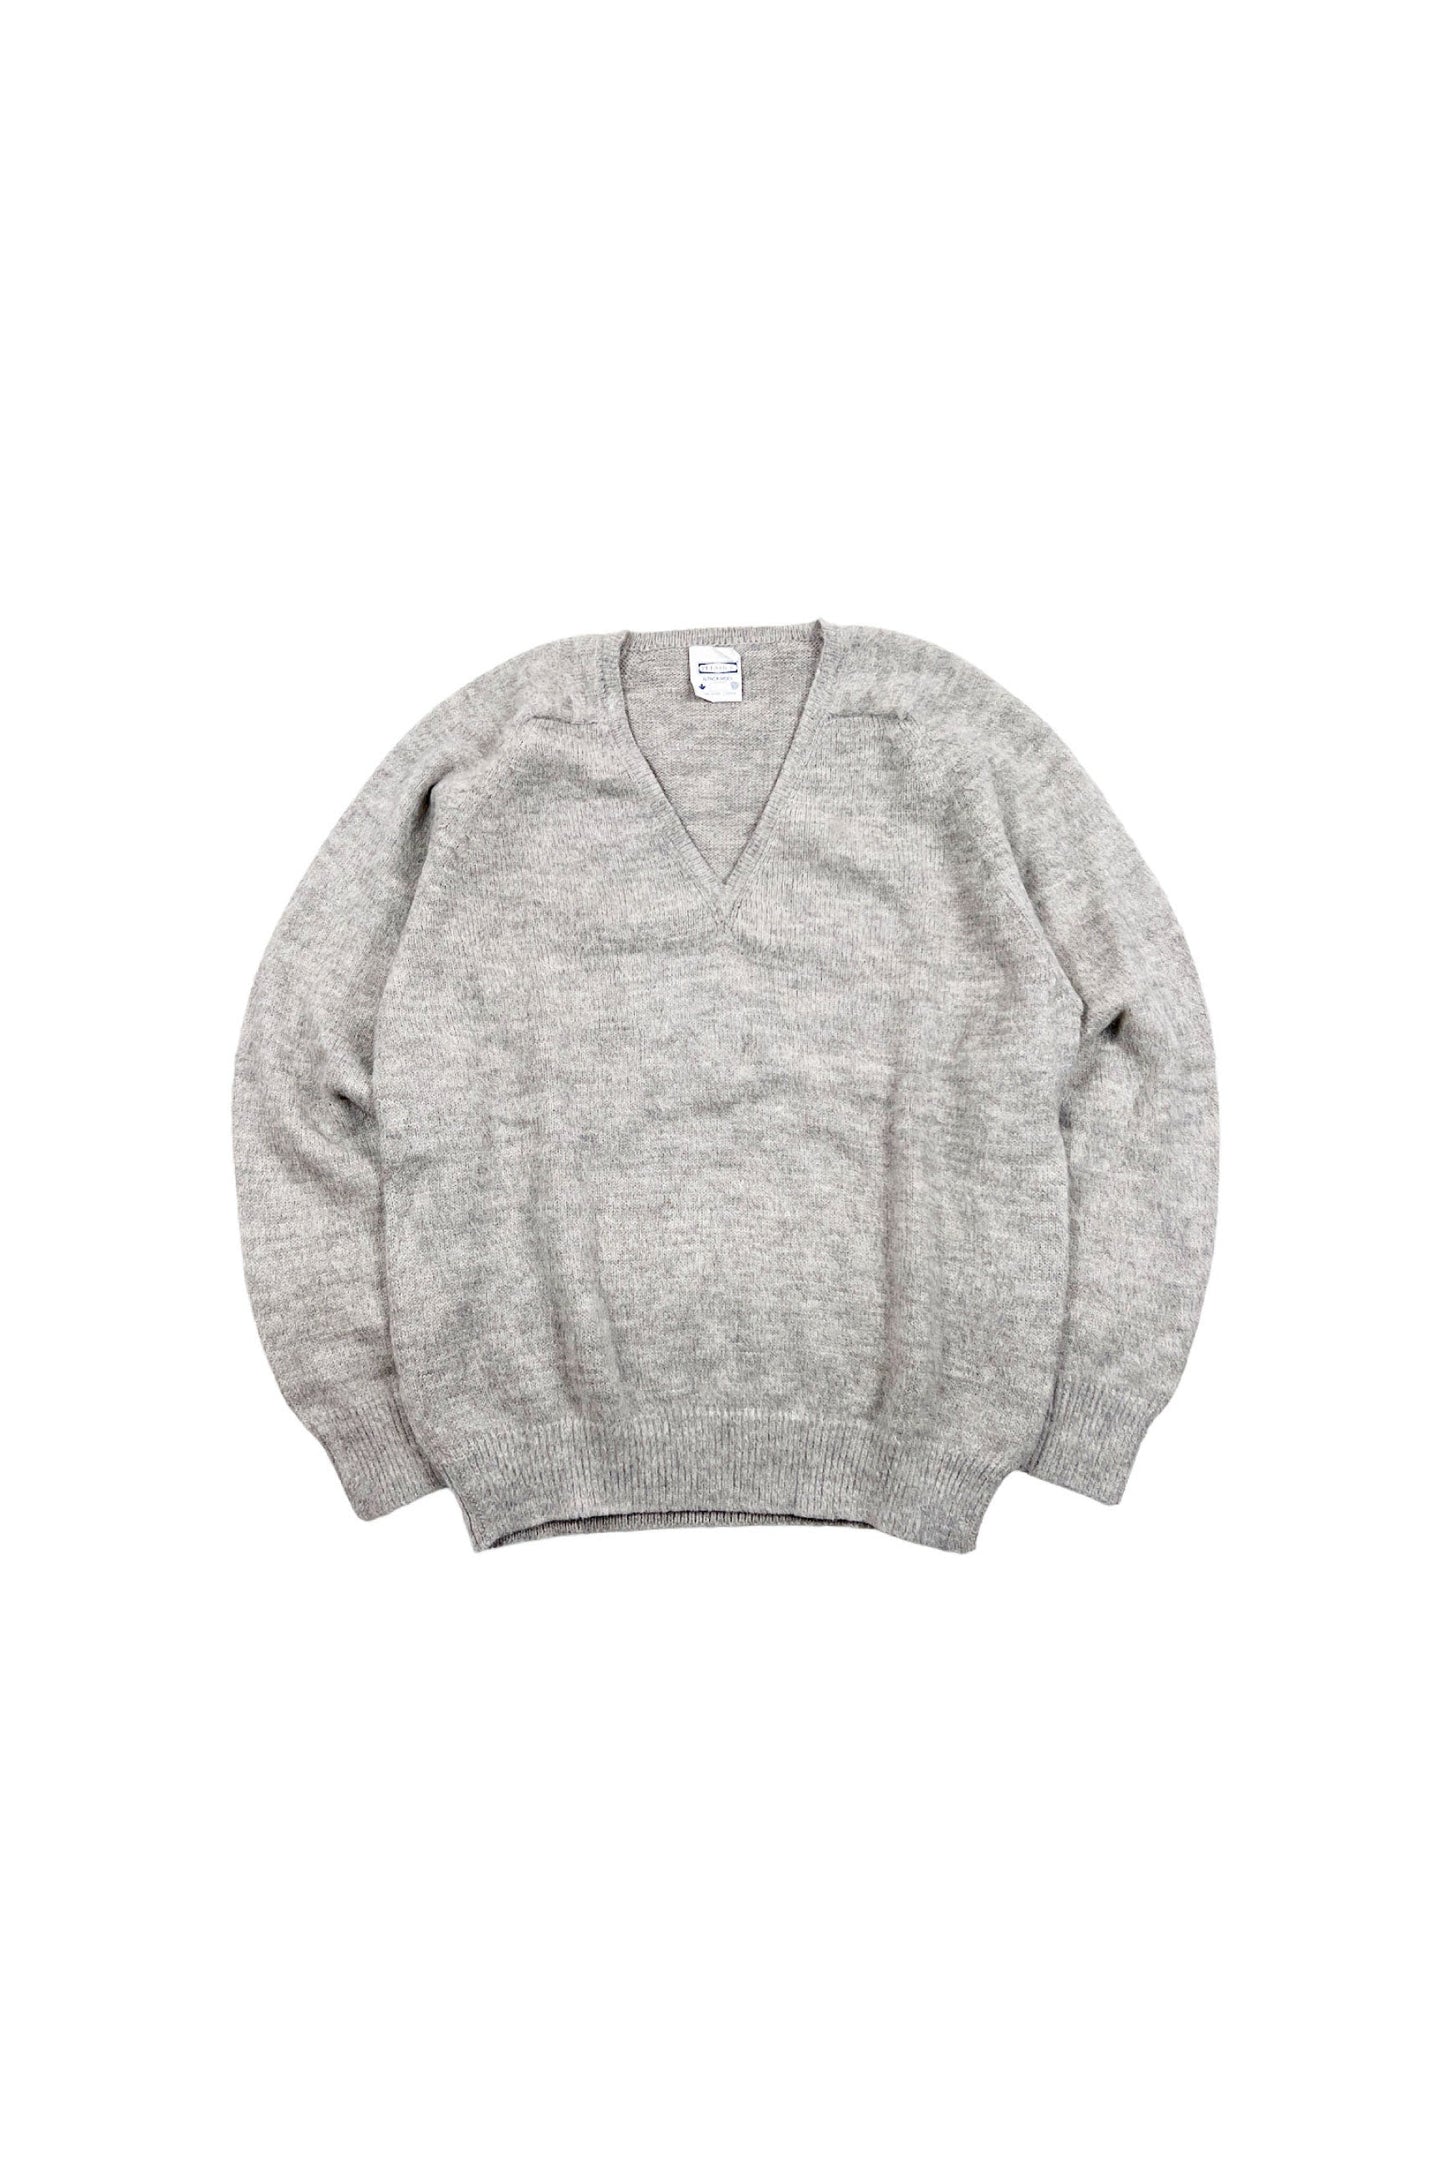 PULSAR.E. ALPACA sweater